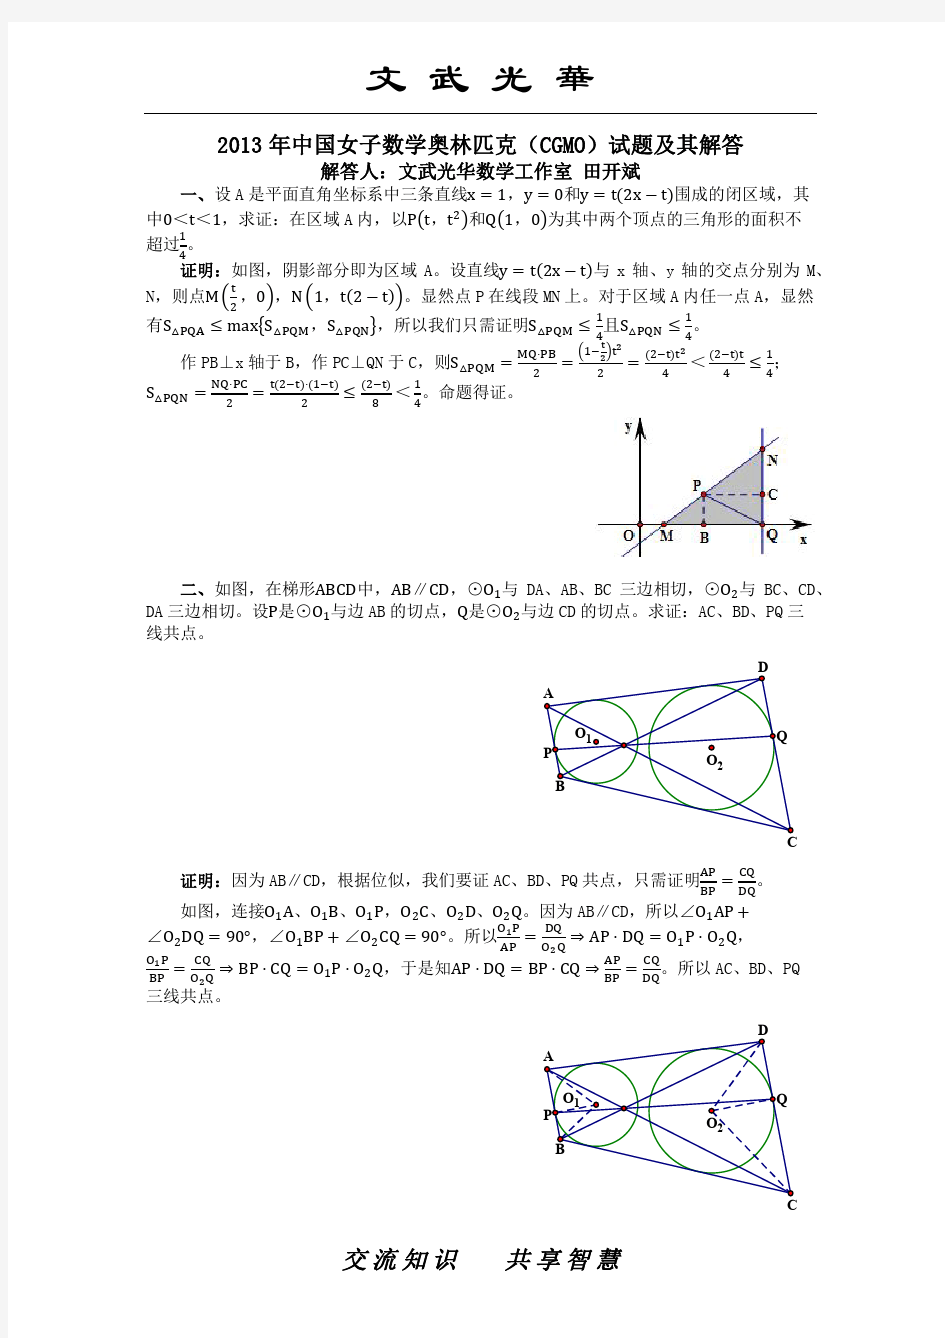 2013年中国女子数学奥林匹克(CGMO)试题及其解答